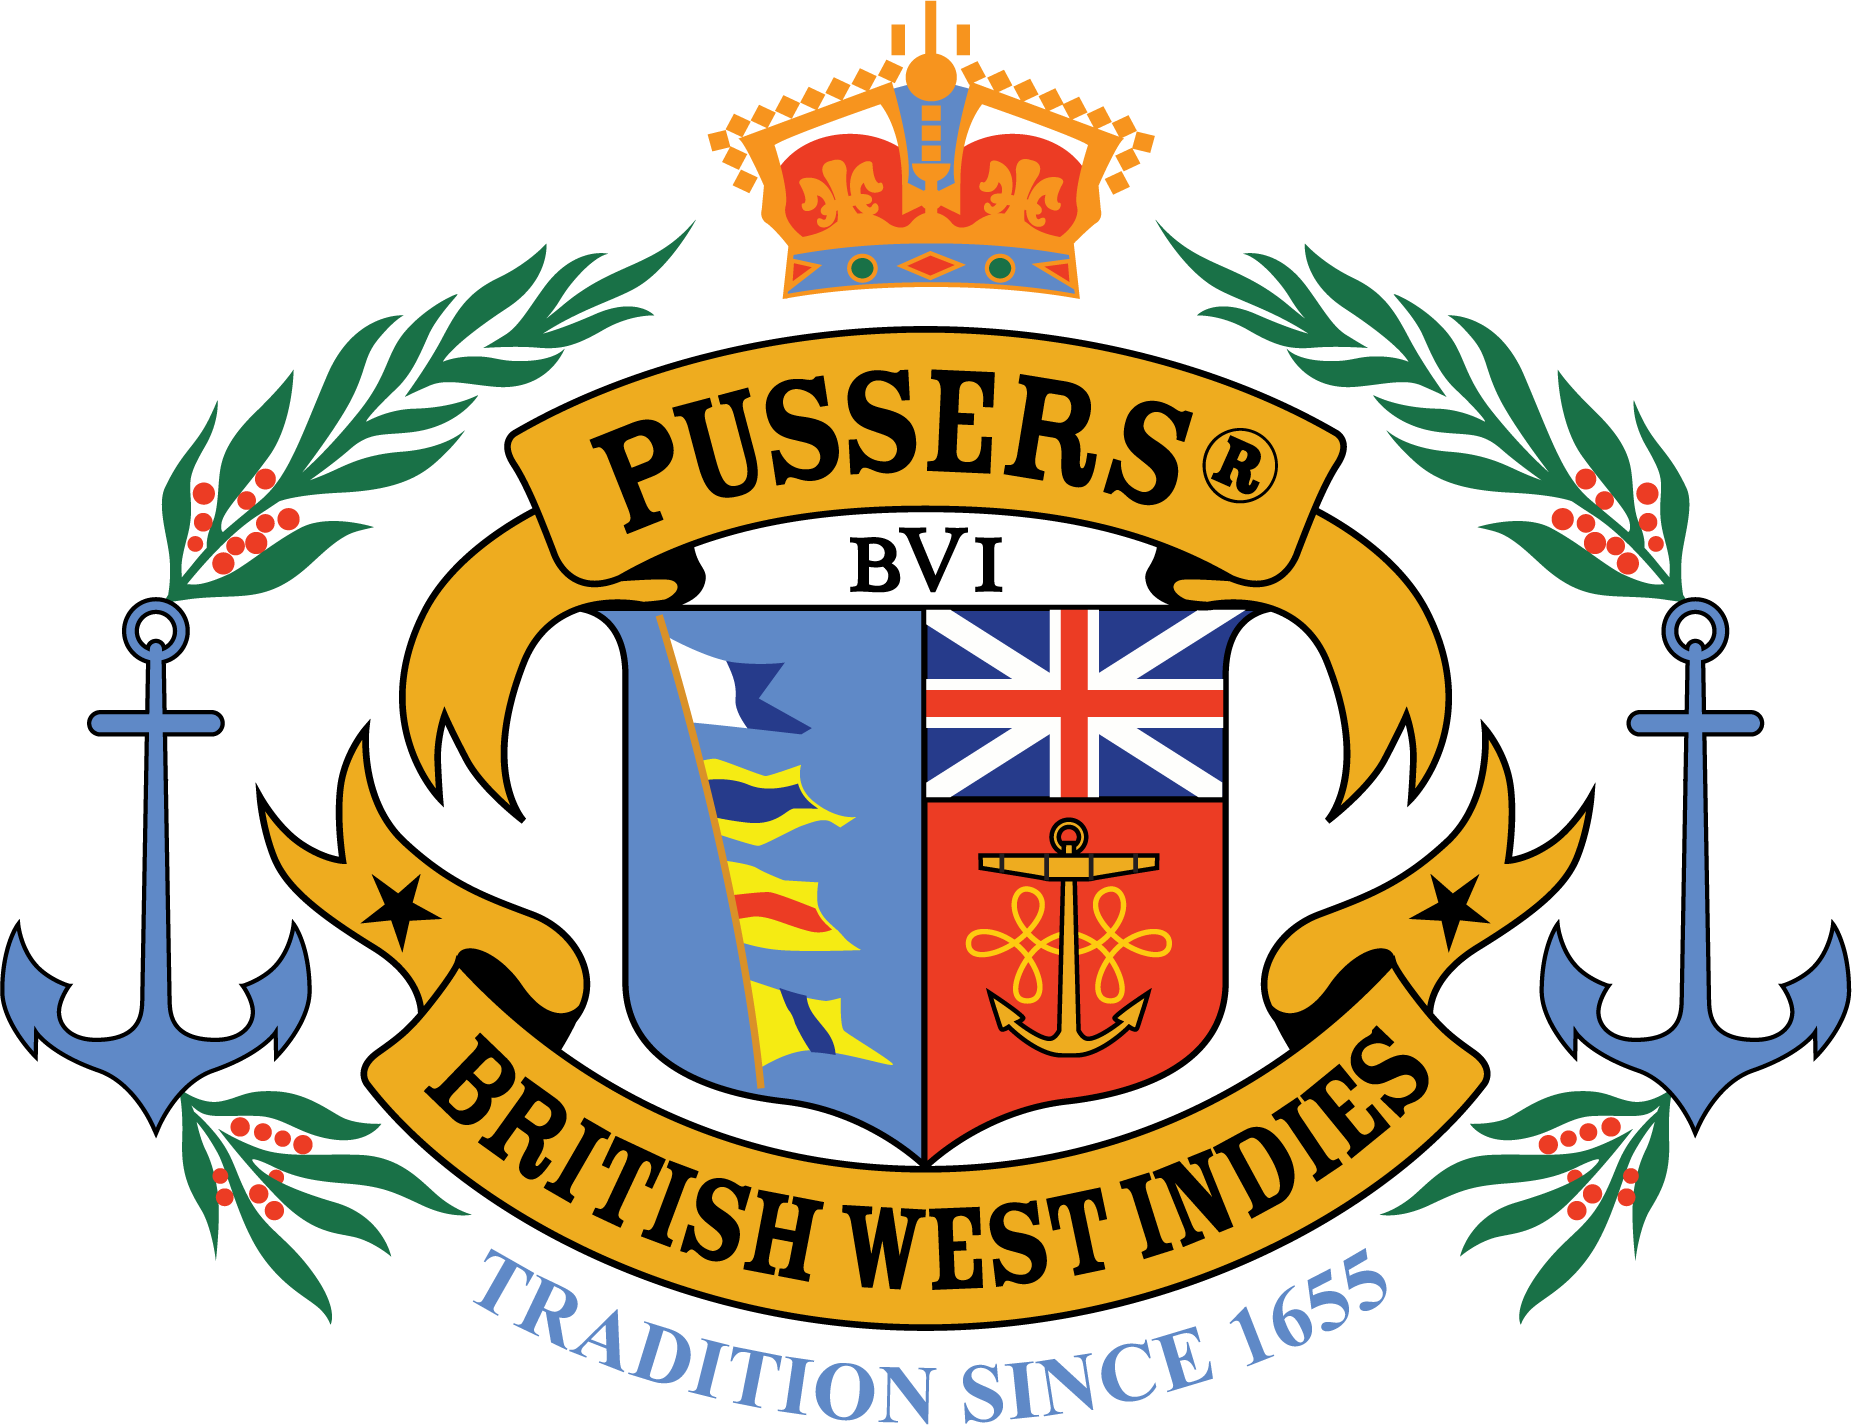 Logo Design Pusser's British West Indies, Ltd - Good One (1852x1425)